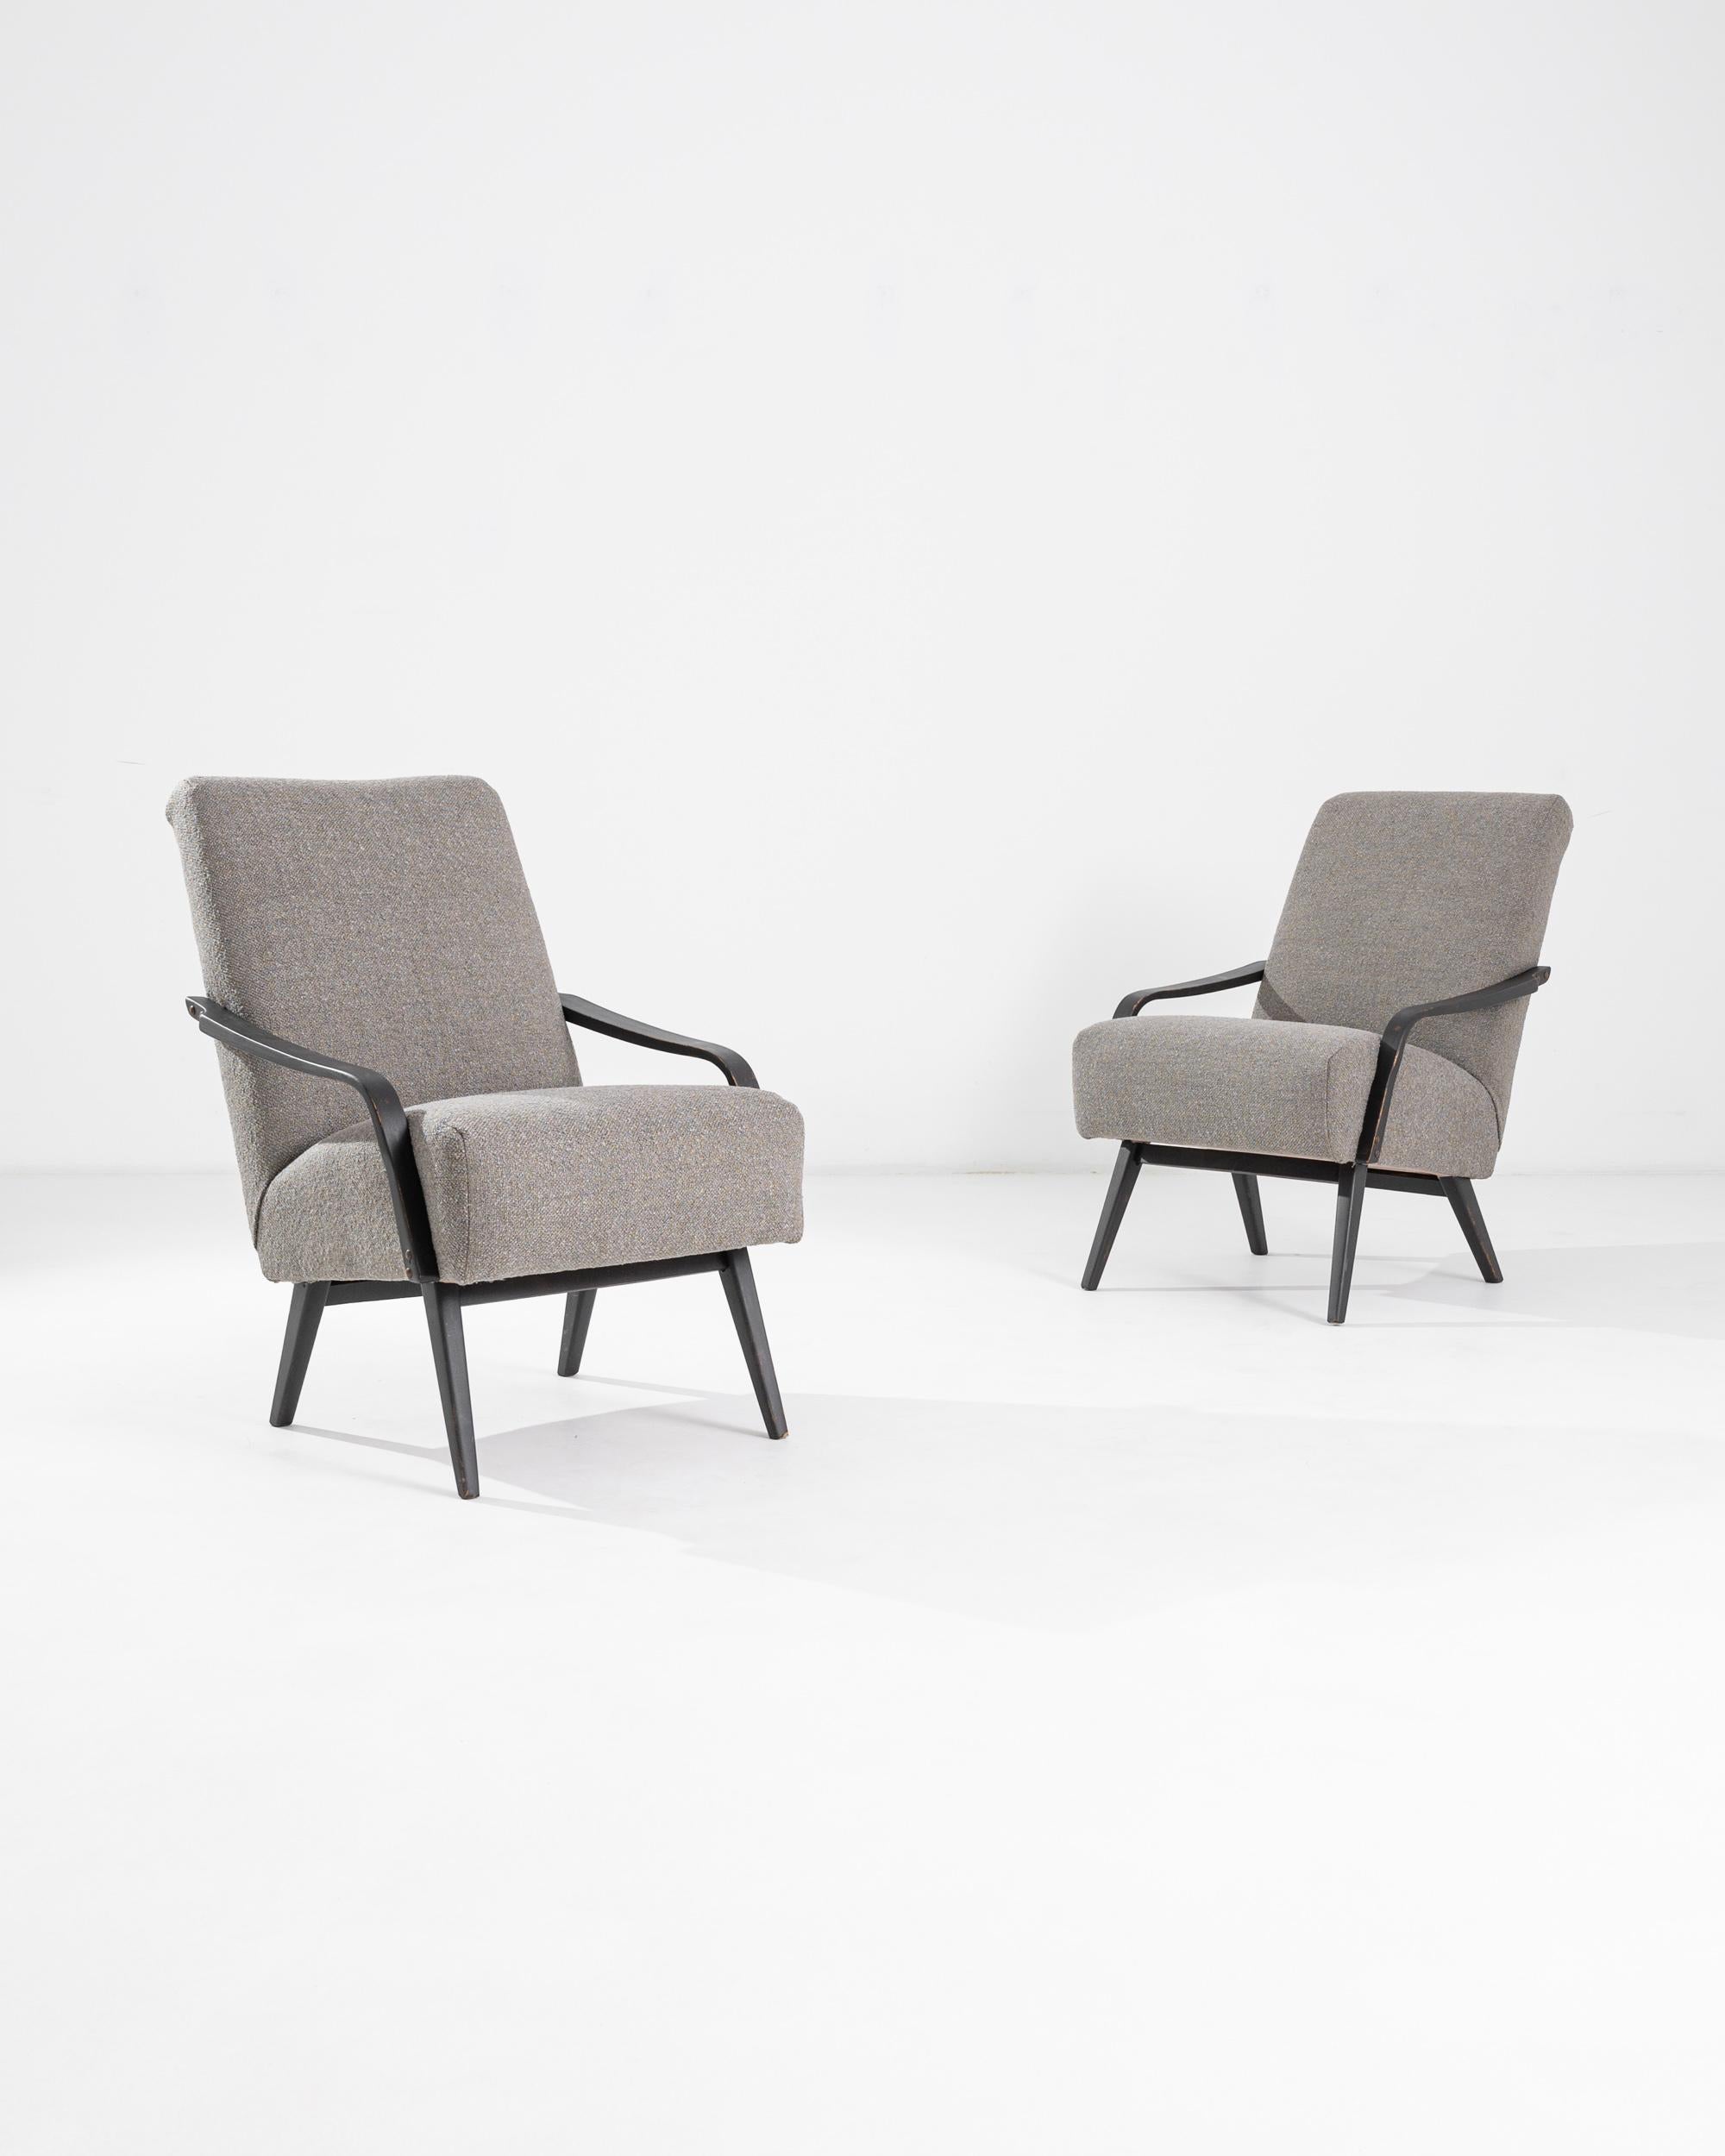 Dieses schöne Paar moderner Sessel aus der Jahrhundertmitte wurde in Tschechien von der renommierten Möbelmanufaktur TON hergestellt. Der Entwurf stammt von J. Smidek. Der tiefe und bequeme Sitz ist mit weichem Bouclé gepolstert und lässt sich